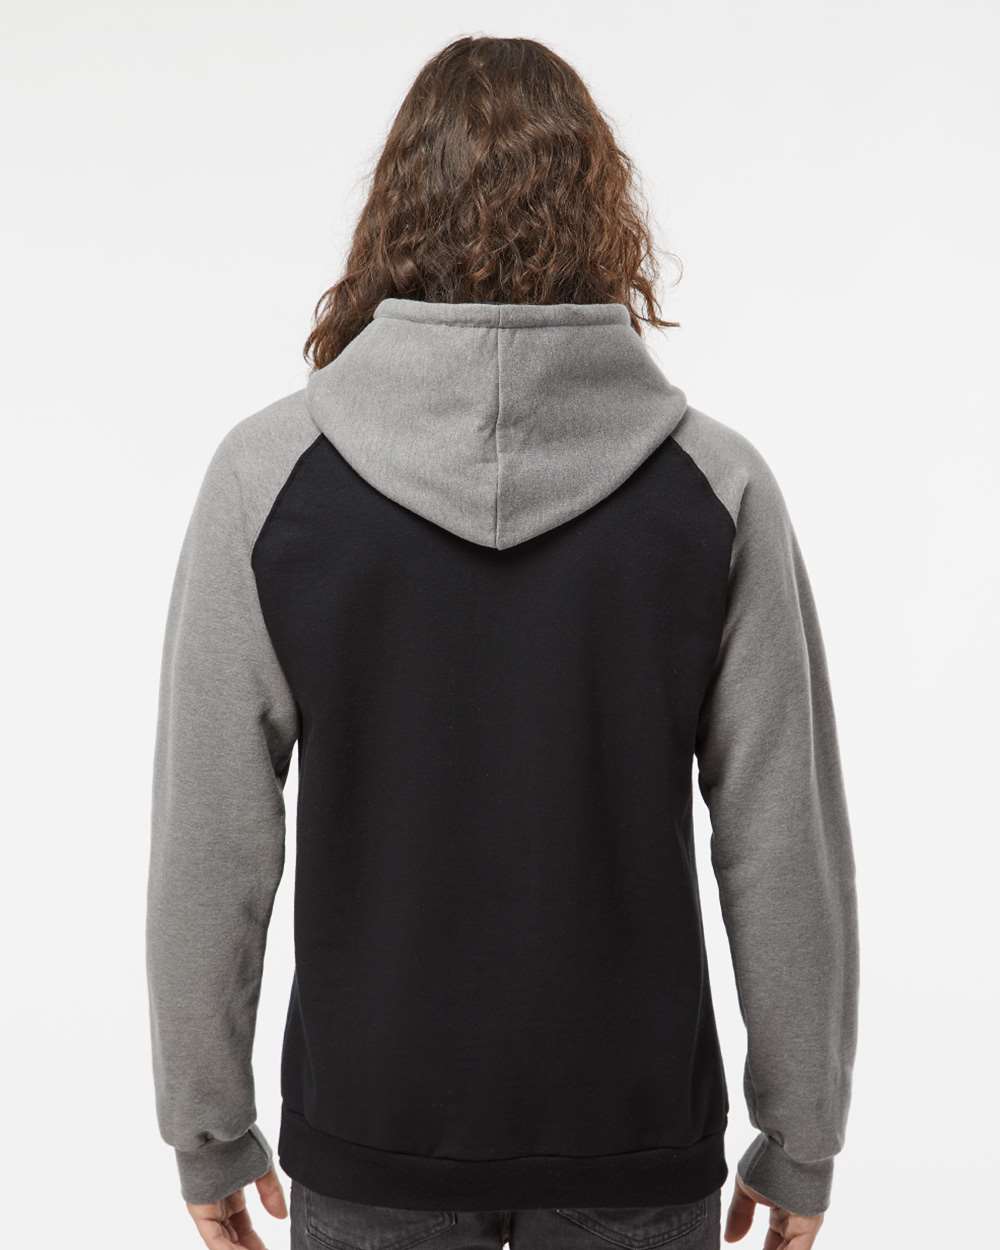 King Fashion Fleece Raglan Hooded Sweatshirt KF4042 #colormdl_Black/ Grey Heather